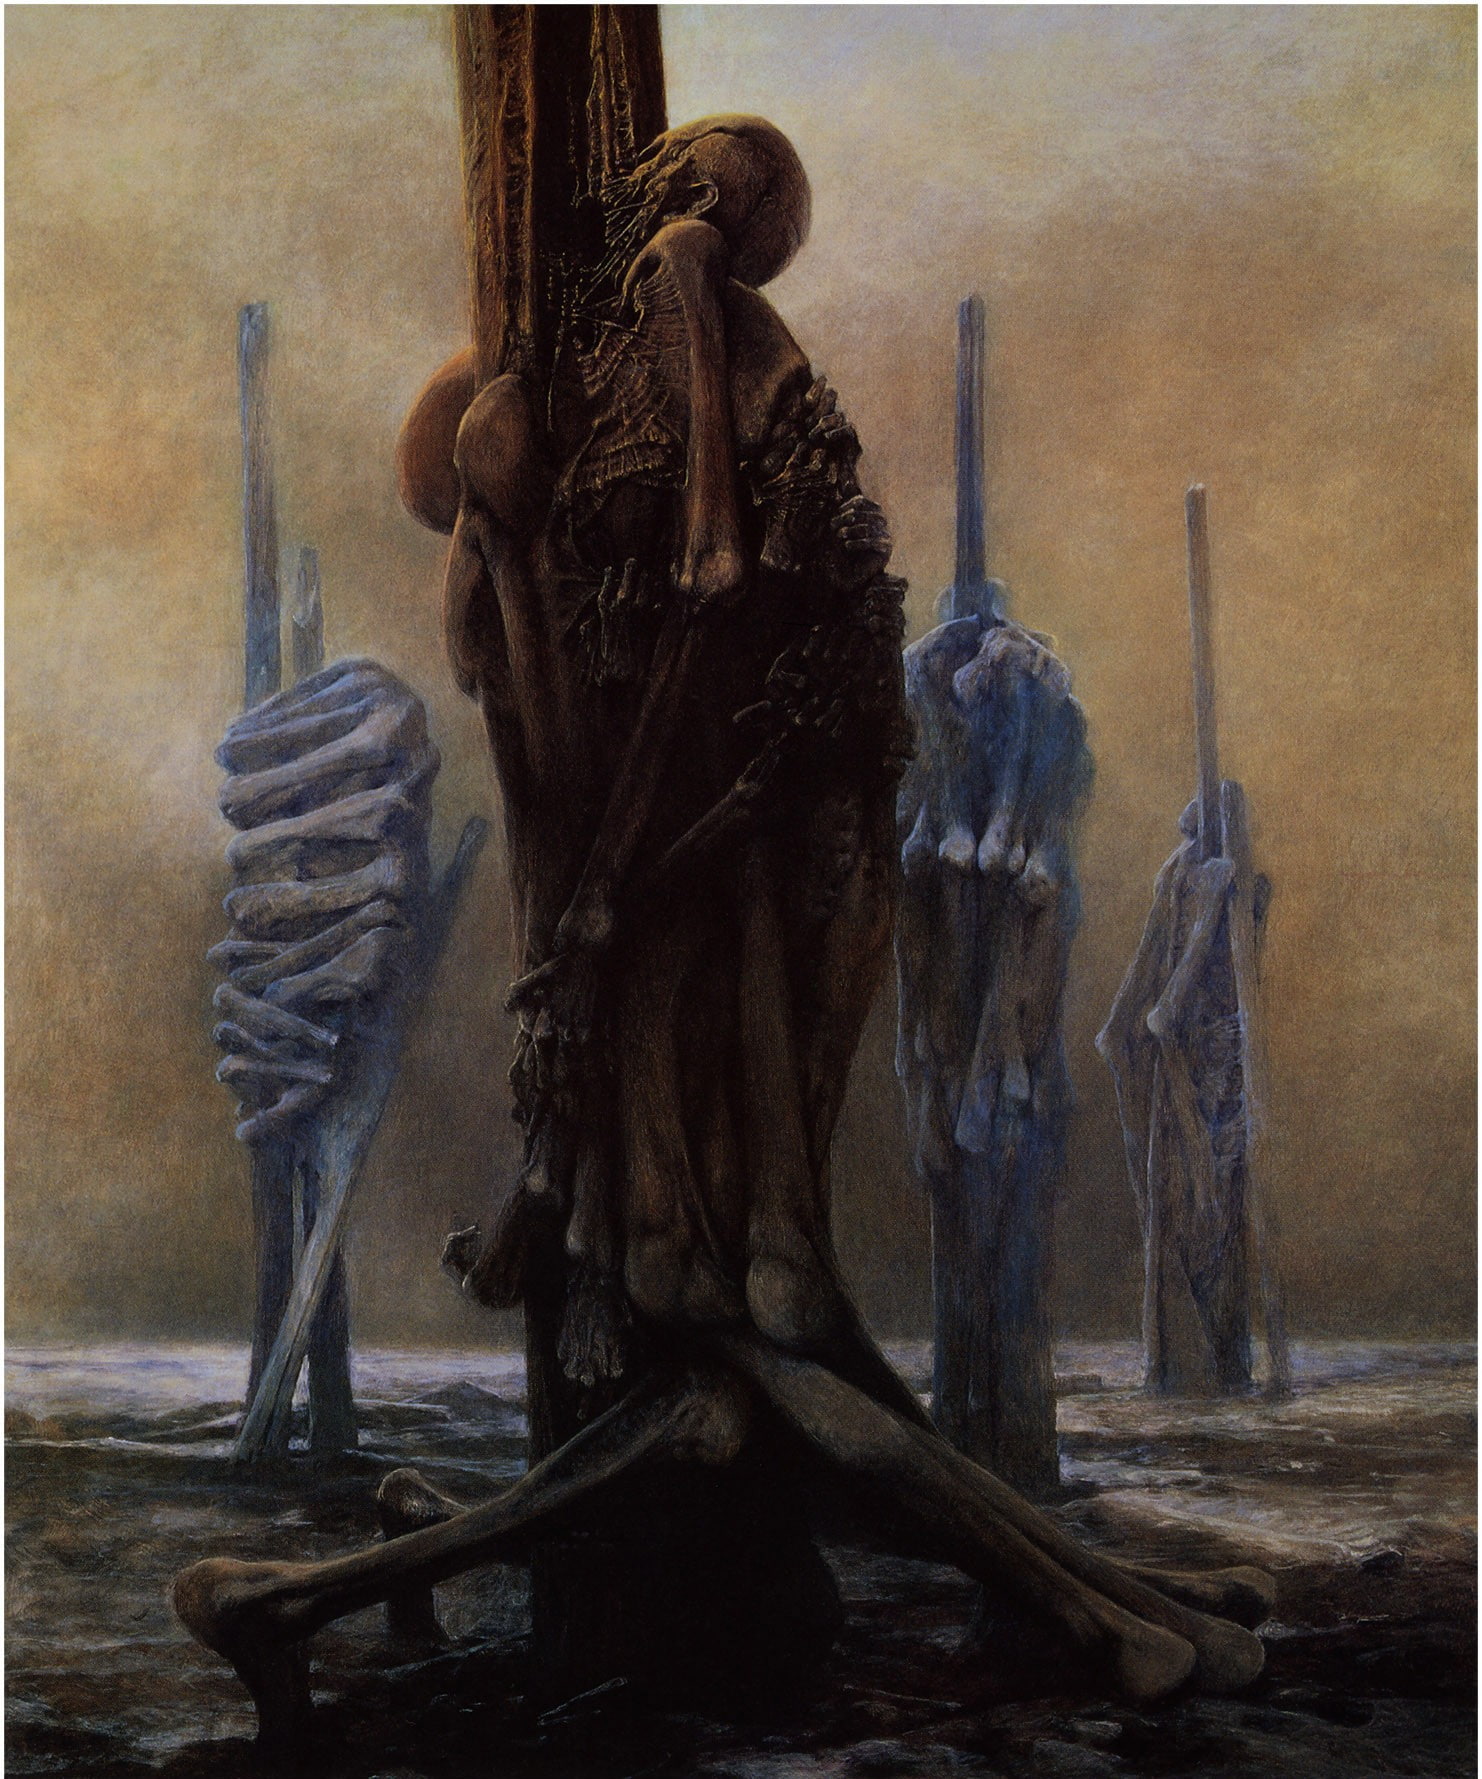 Zdzisław Beksiński, Artwork, Dark, Skeletons, Hanging Together, human skeleton on post illustration